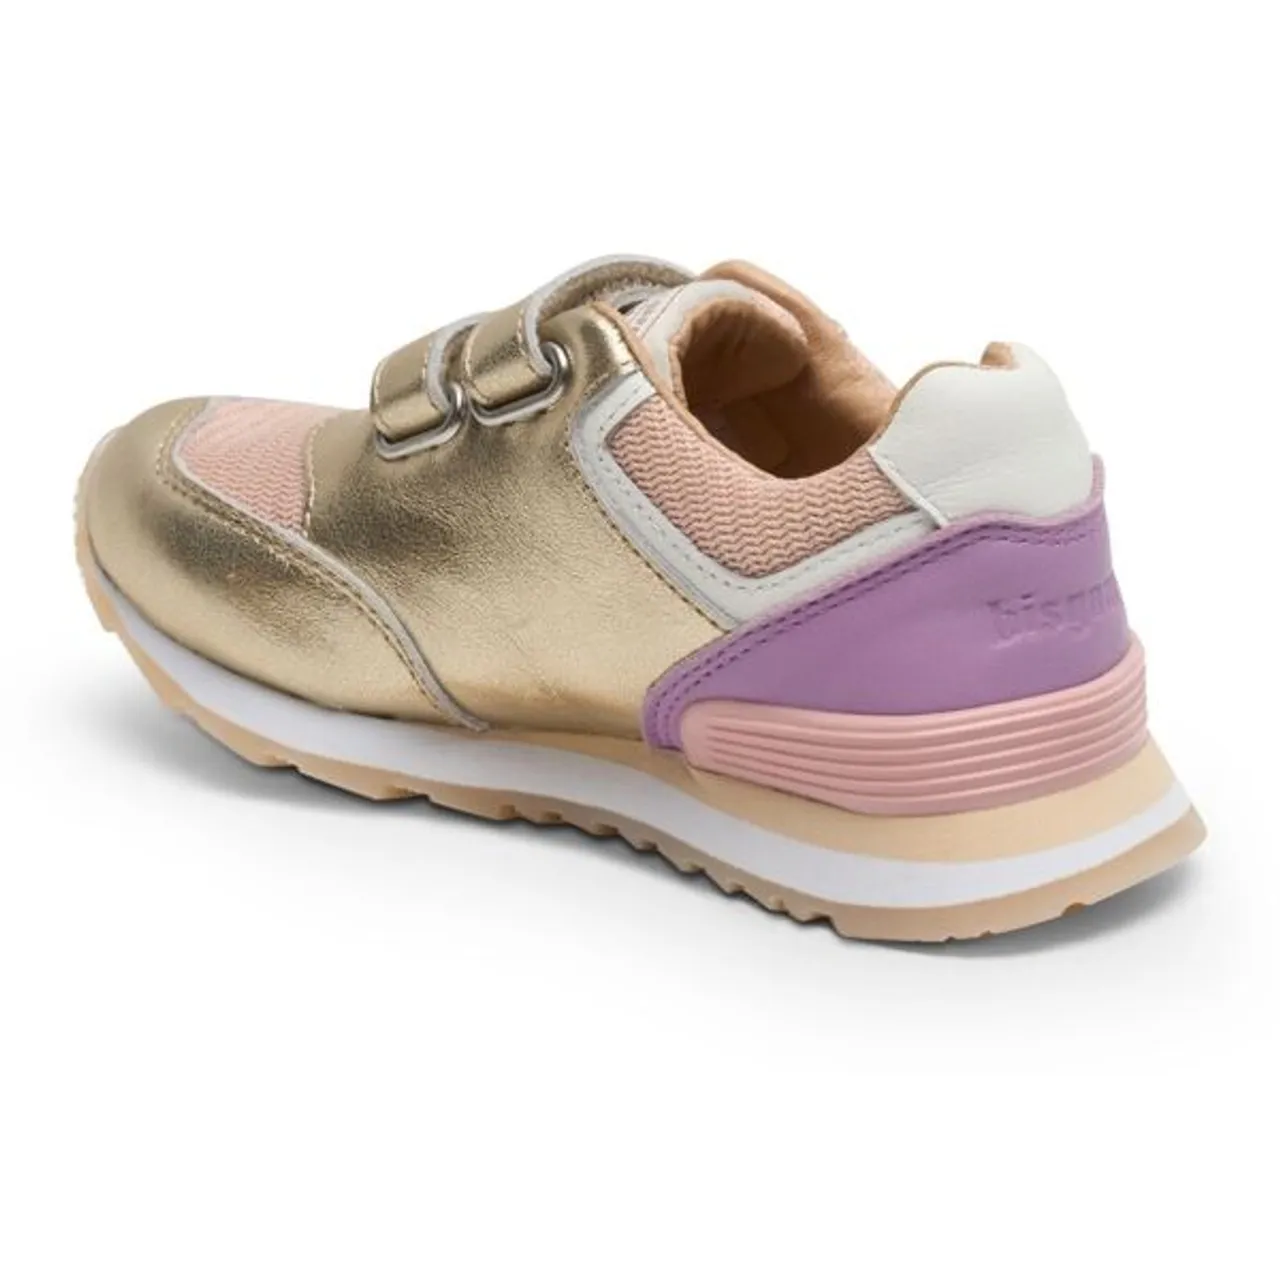 Sneaker BISGAARD "winston" Gr. 28, goldfarben (goldfarben multi) Kinder Schuhe Sneaker mit herausnehmbarer Lederinnensohle, Freizeitschuh, Halbschuh